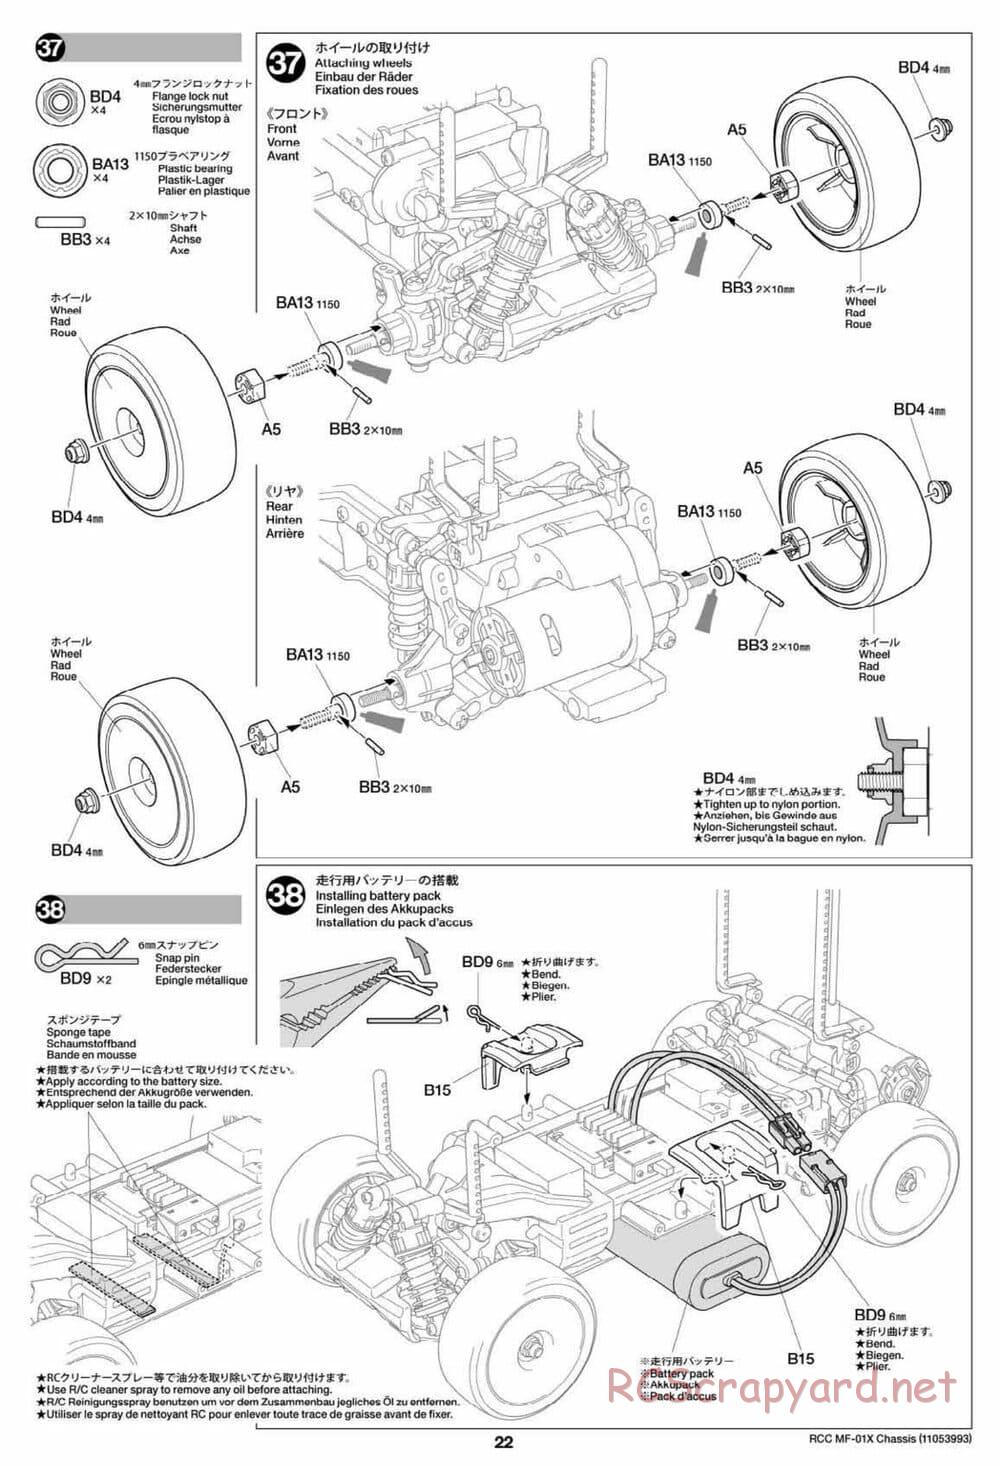 Tamiya - MF-01X Chassis - Manual - Page 22